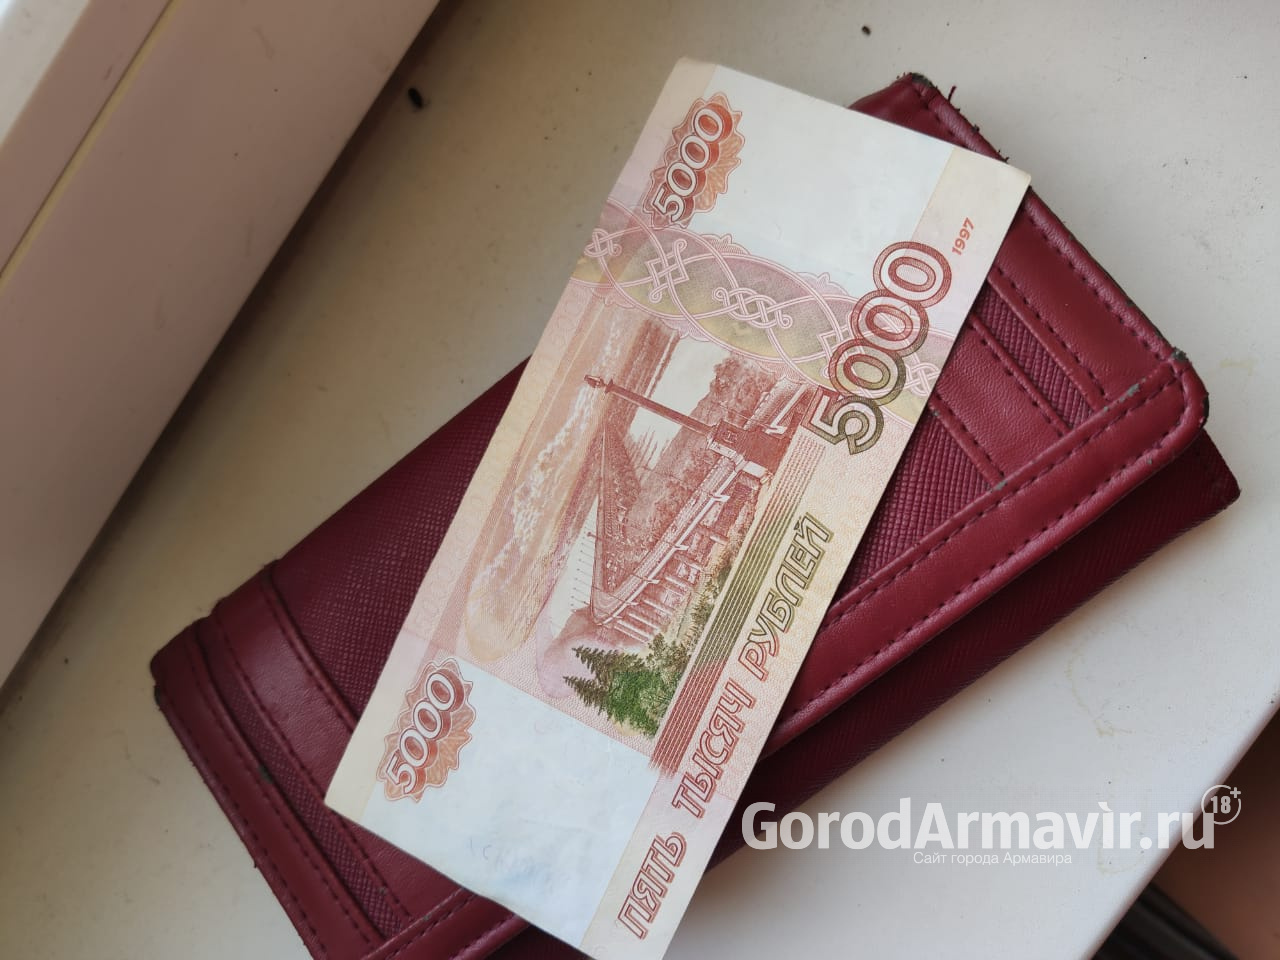 В Армавире полицейские задержали сбытчика фальшивой банкноты номиналом 5 тысяч рублей